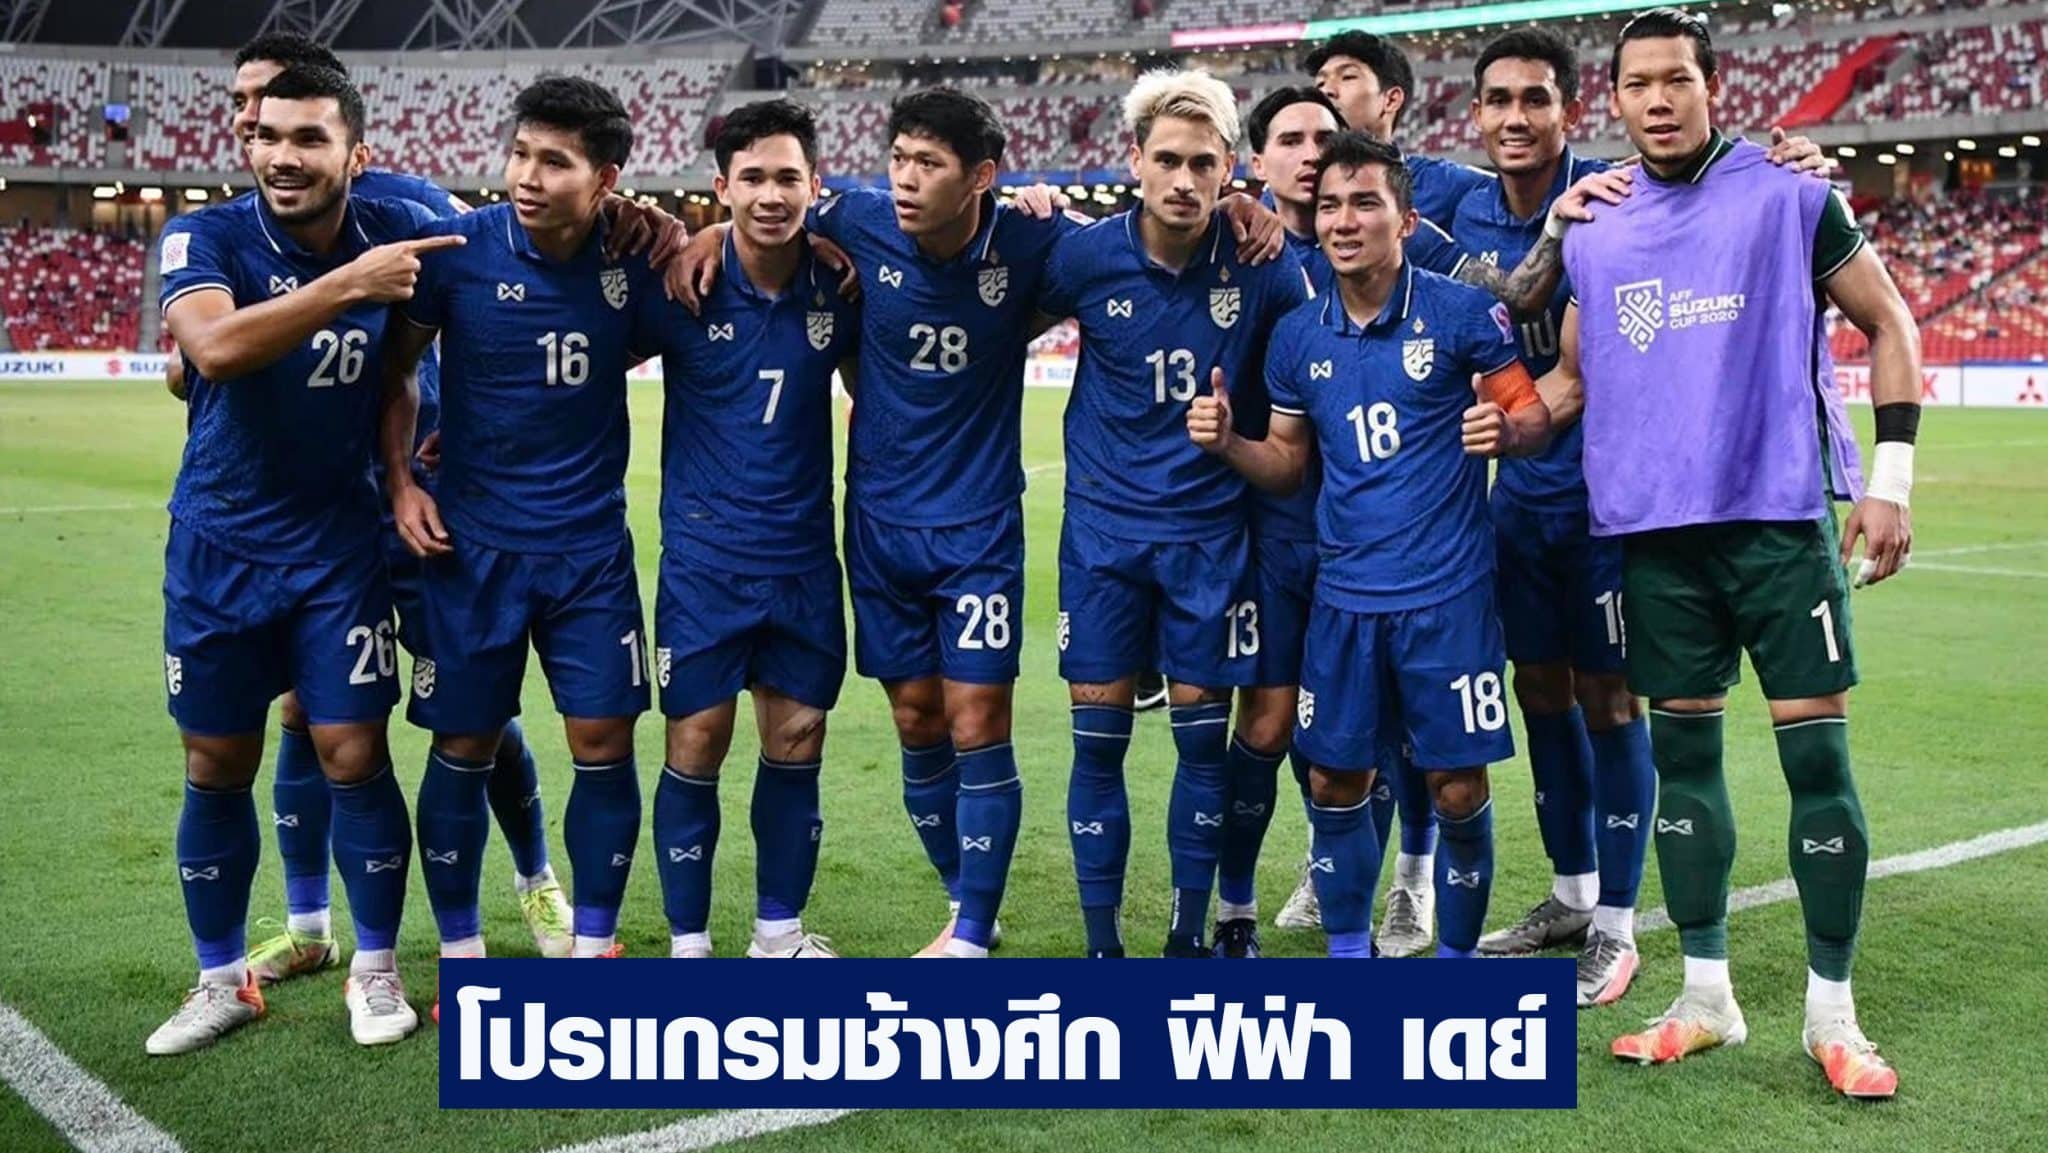 โปรแกรมฟุตบอลทีมชาติไทย ล่าสุด